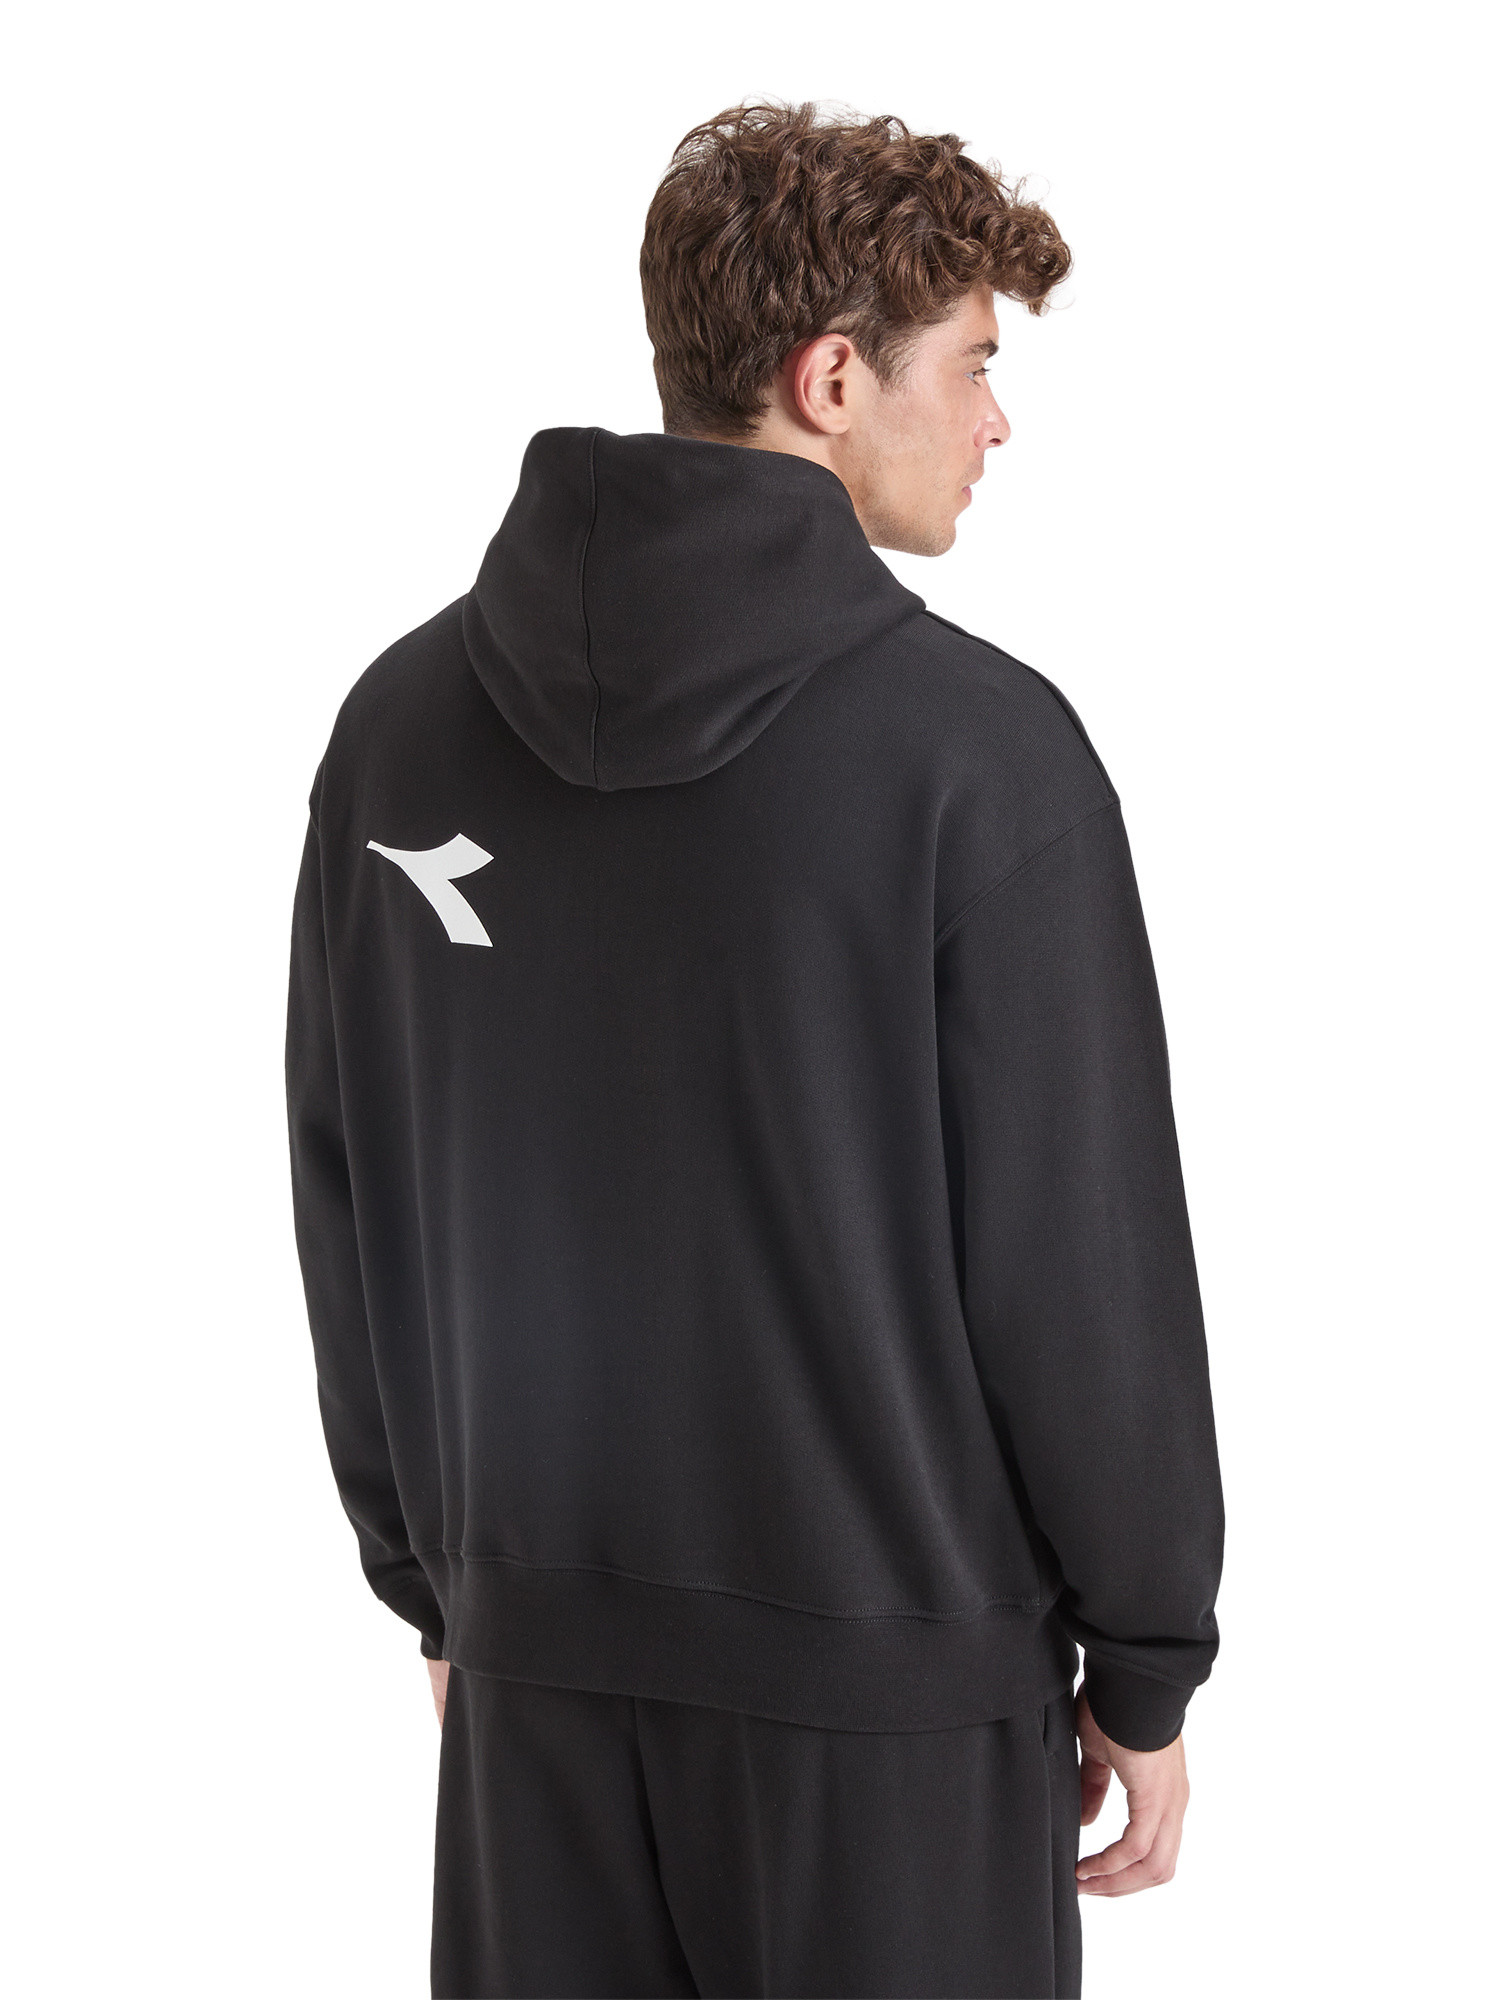 Diadora - Manifesto cotton hoodie, Black, large image number 5